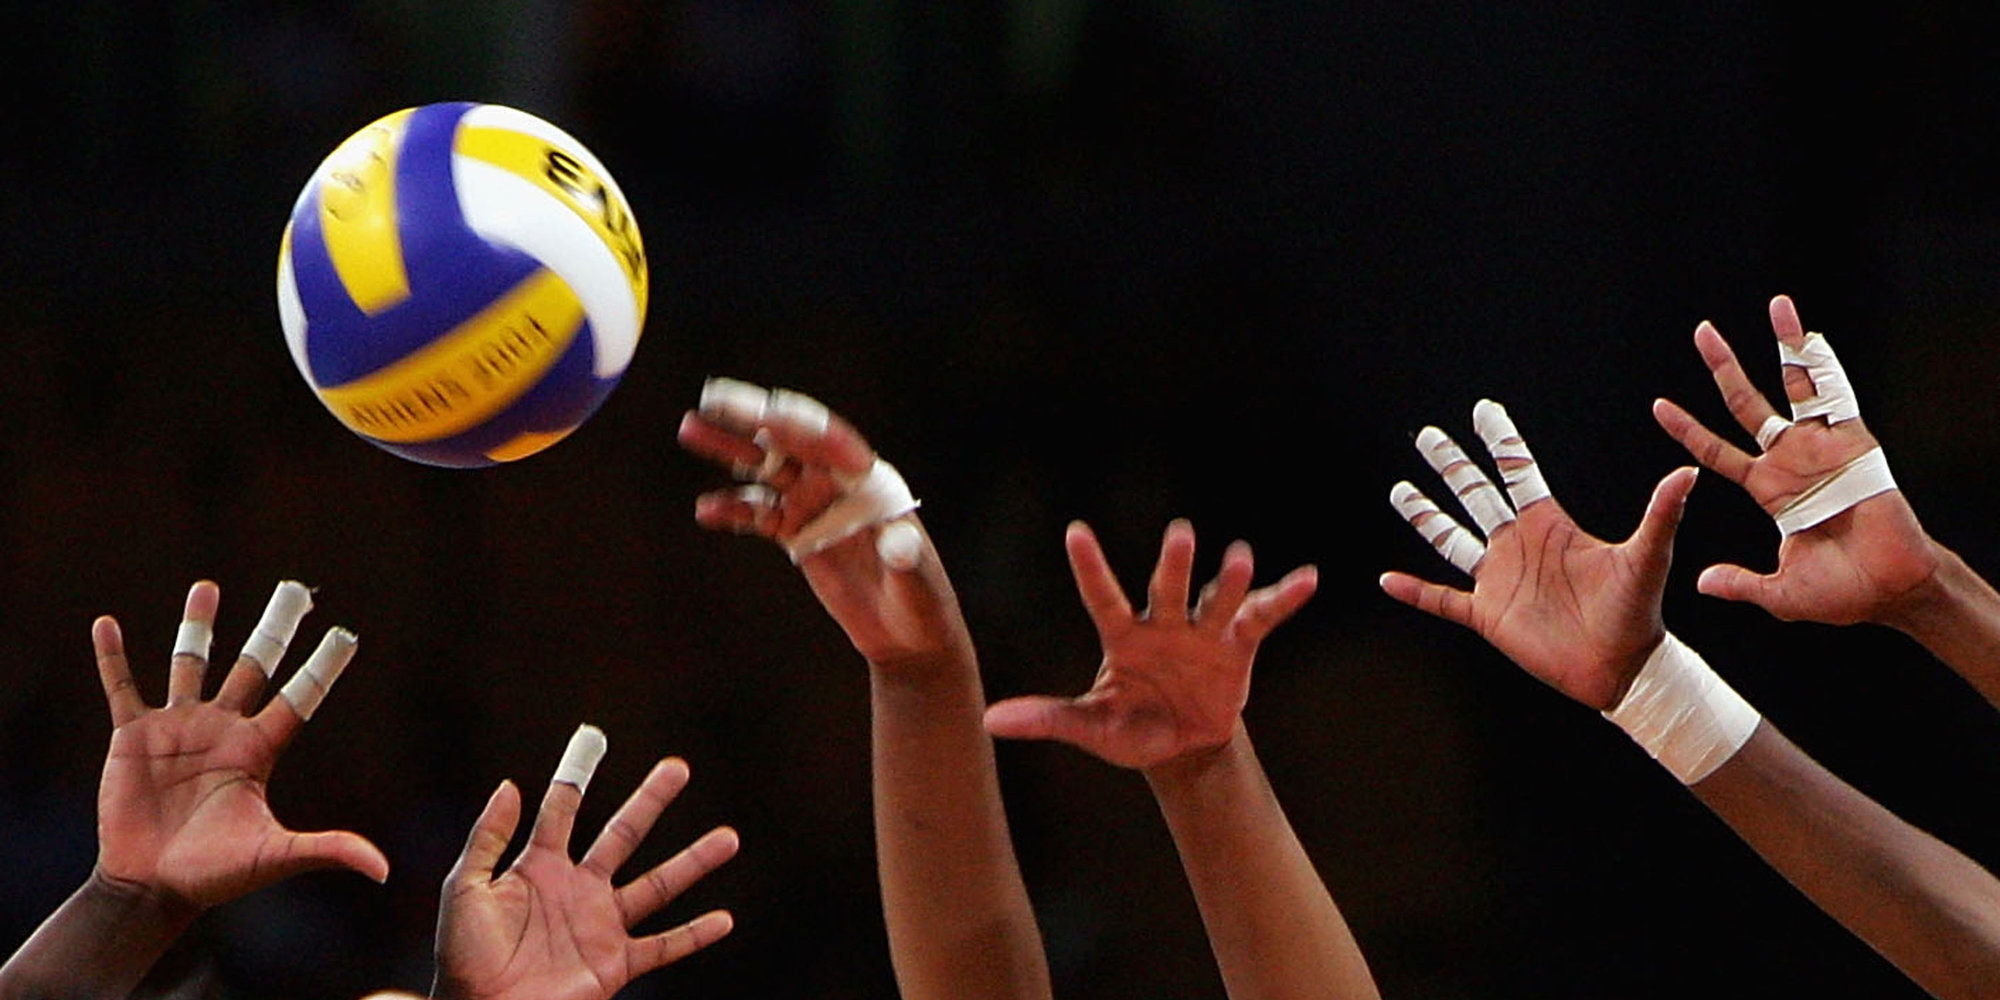 Бельгия обыграла Азербайджан на ЧЕ по волейболу среди женщин